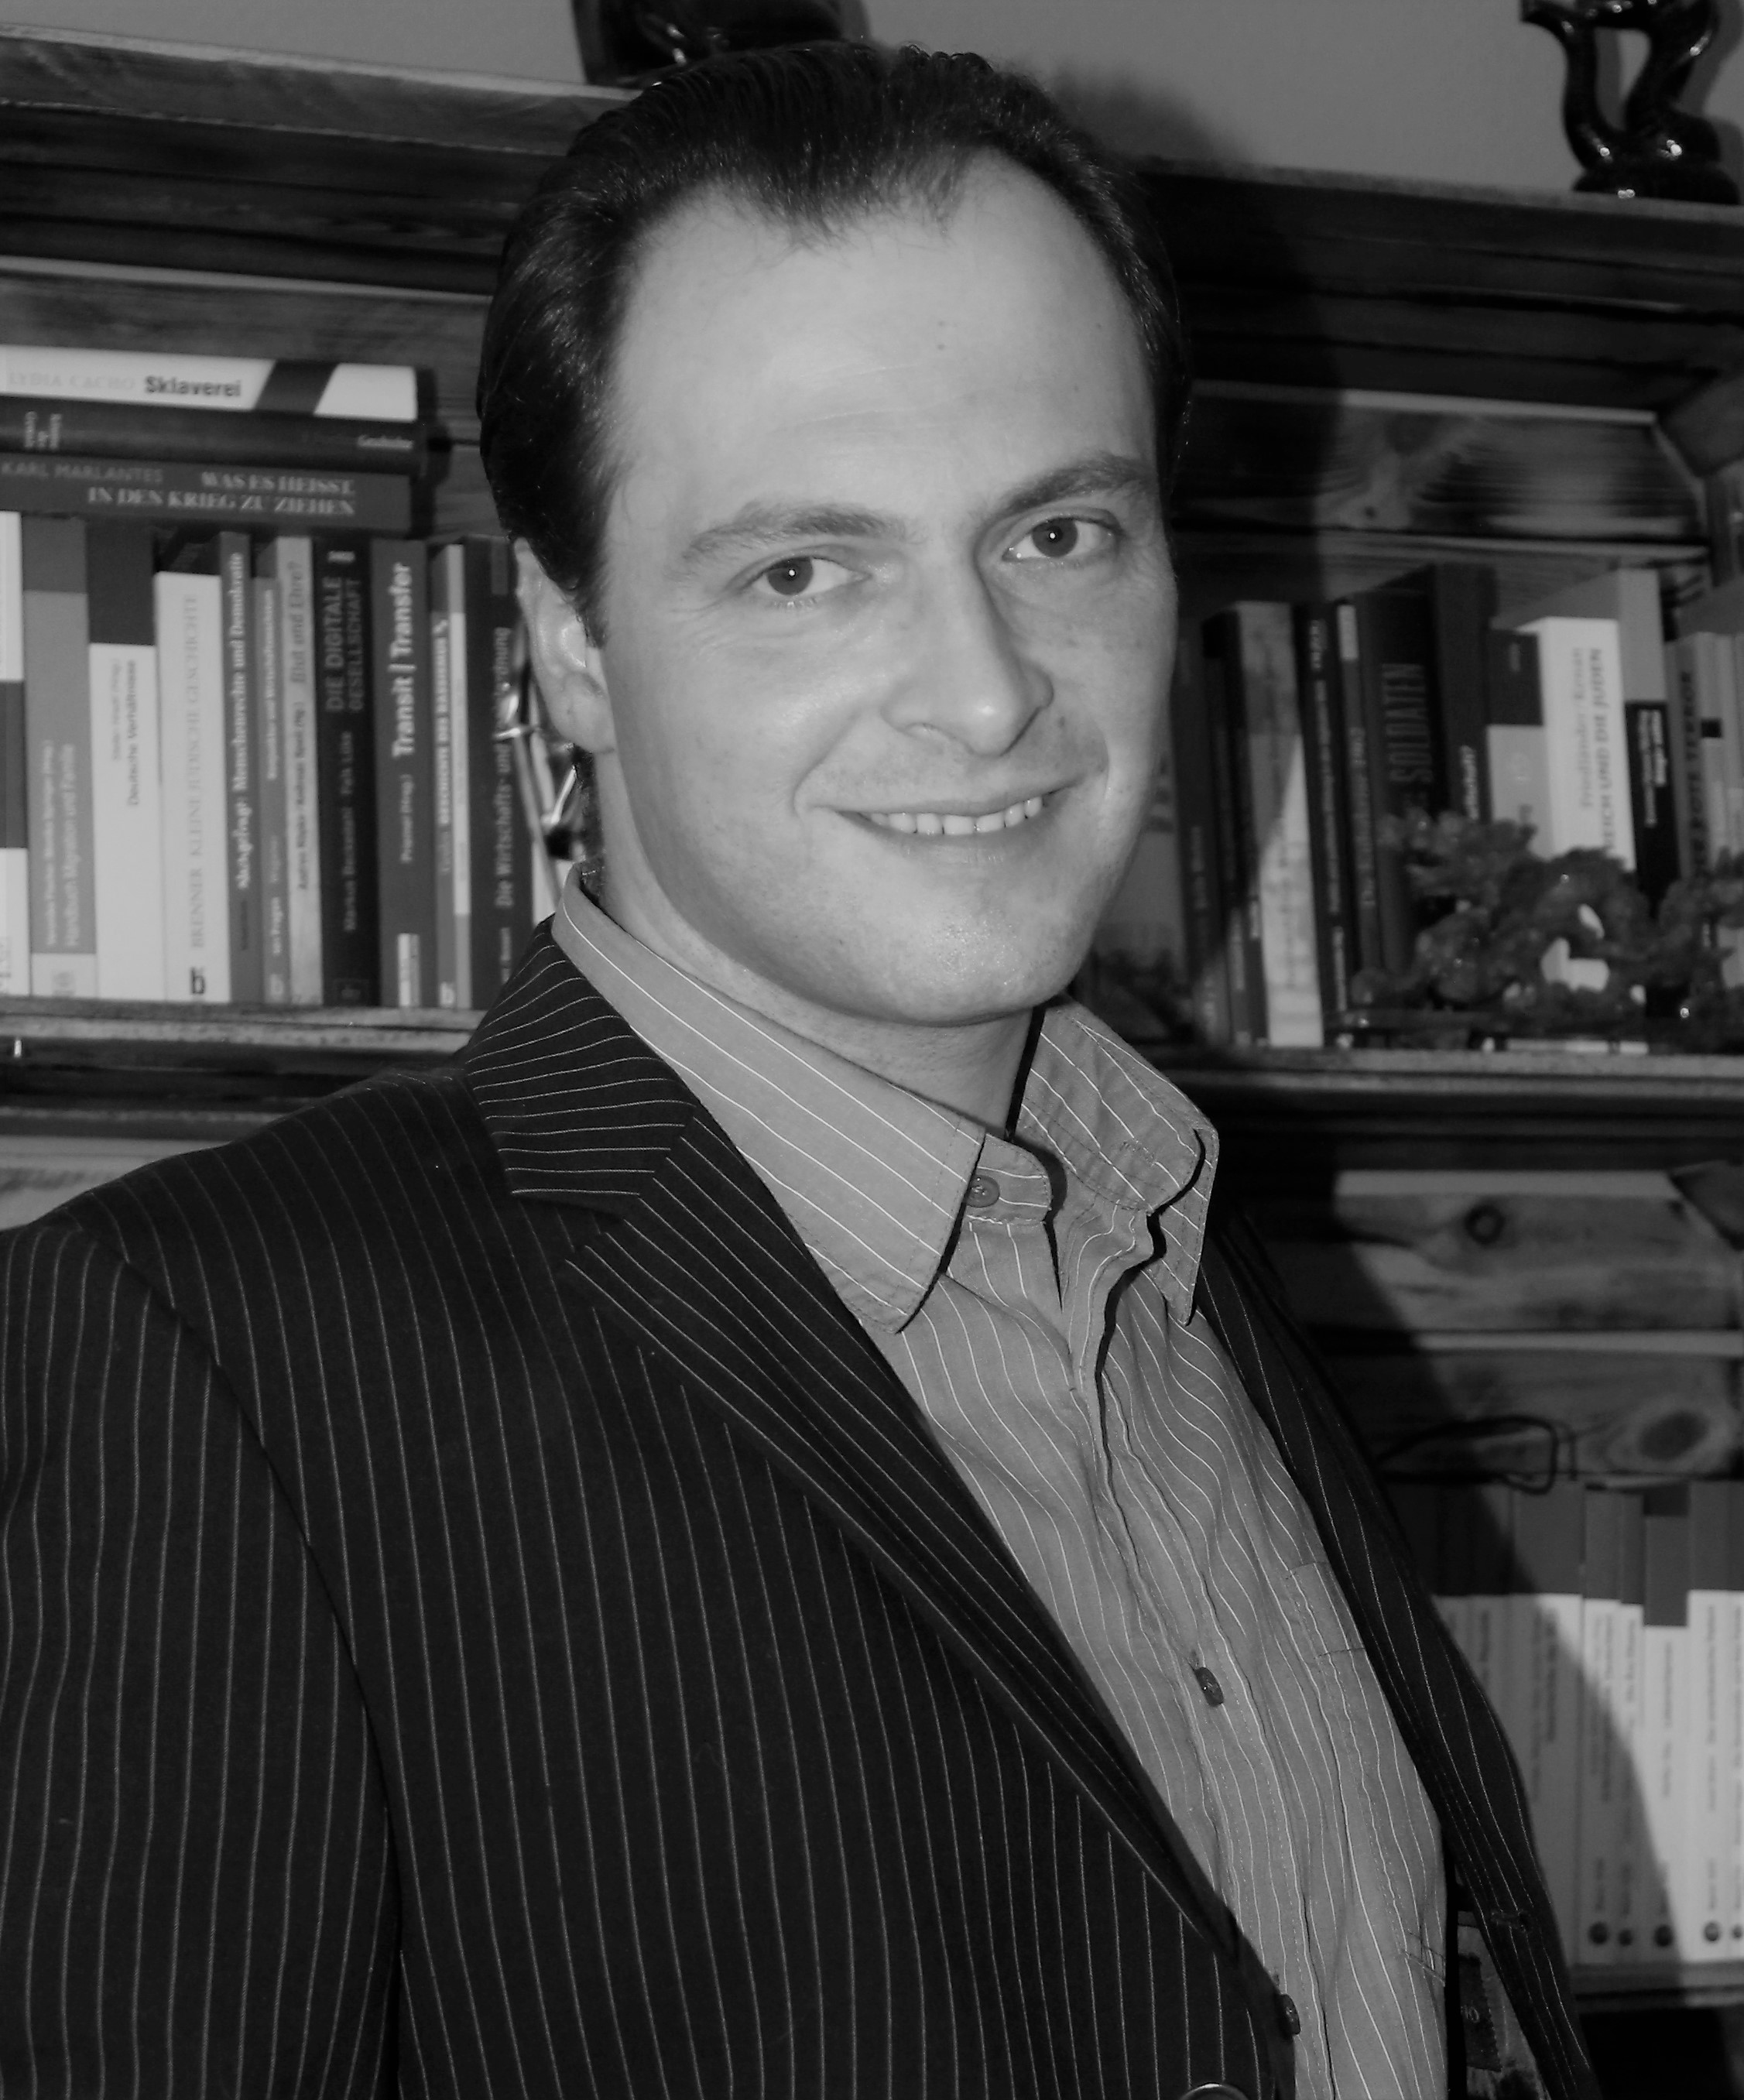 Dimitri Schreiber